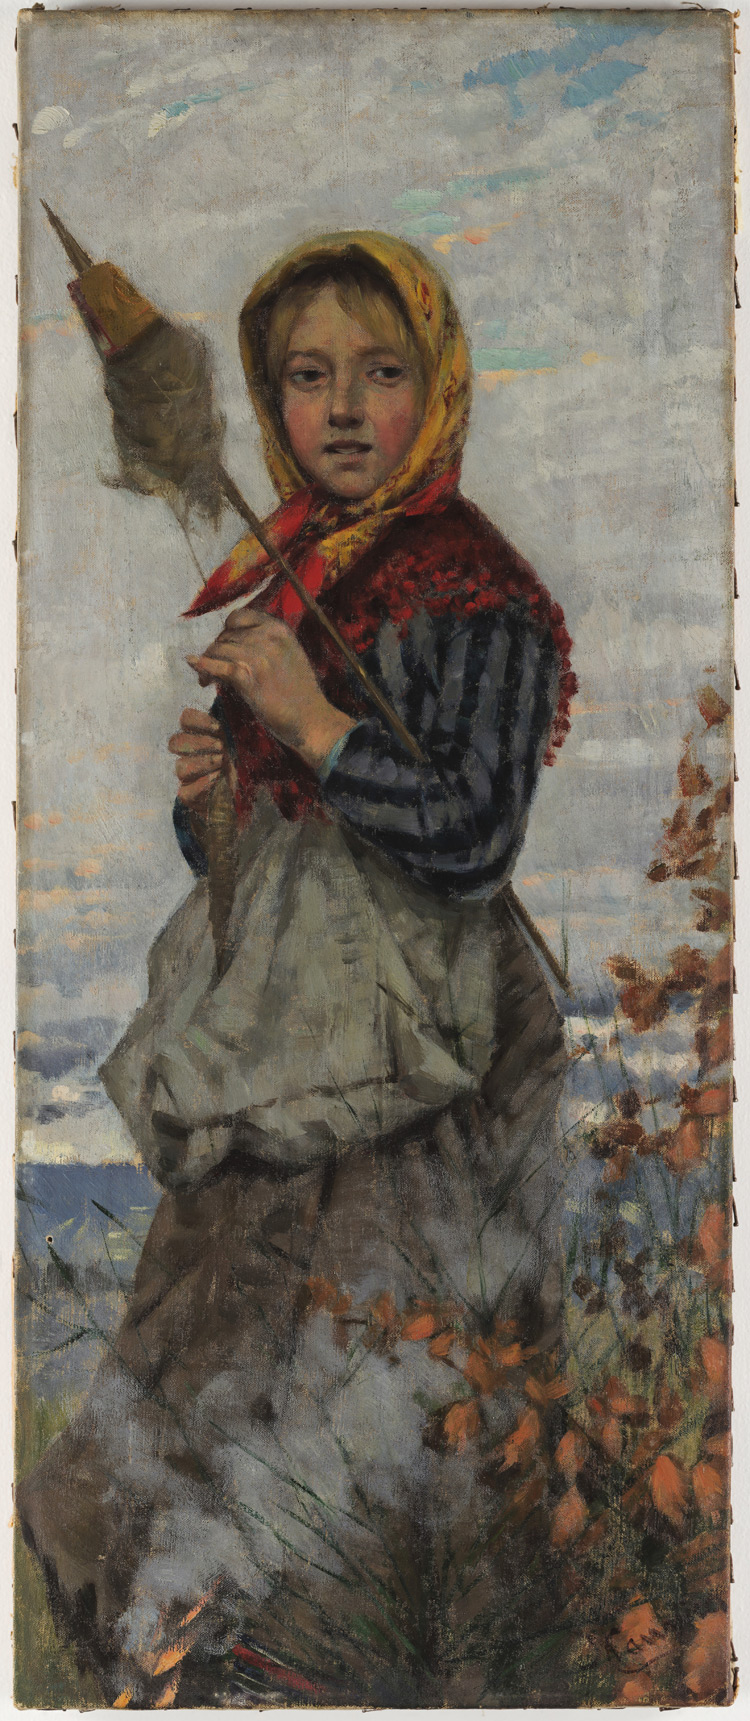 Niccolò Cannicci, La filatrice (1885-1890; olio su cartone, 57 x 24 cm; Milano, Museo Nazionale Scienza e Tecnologia Leonardo da Vinci) 